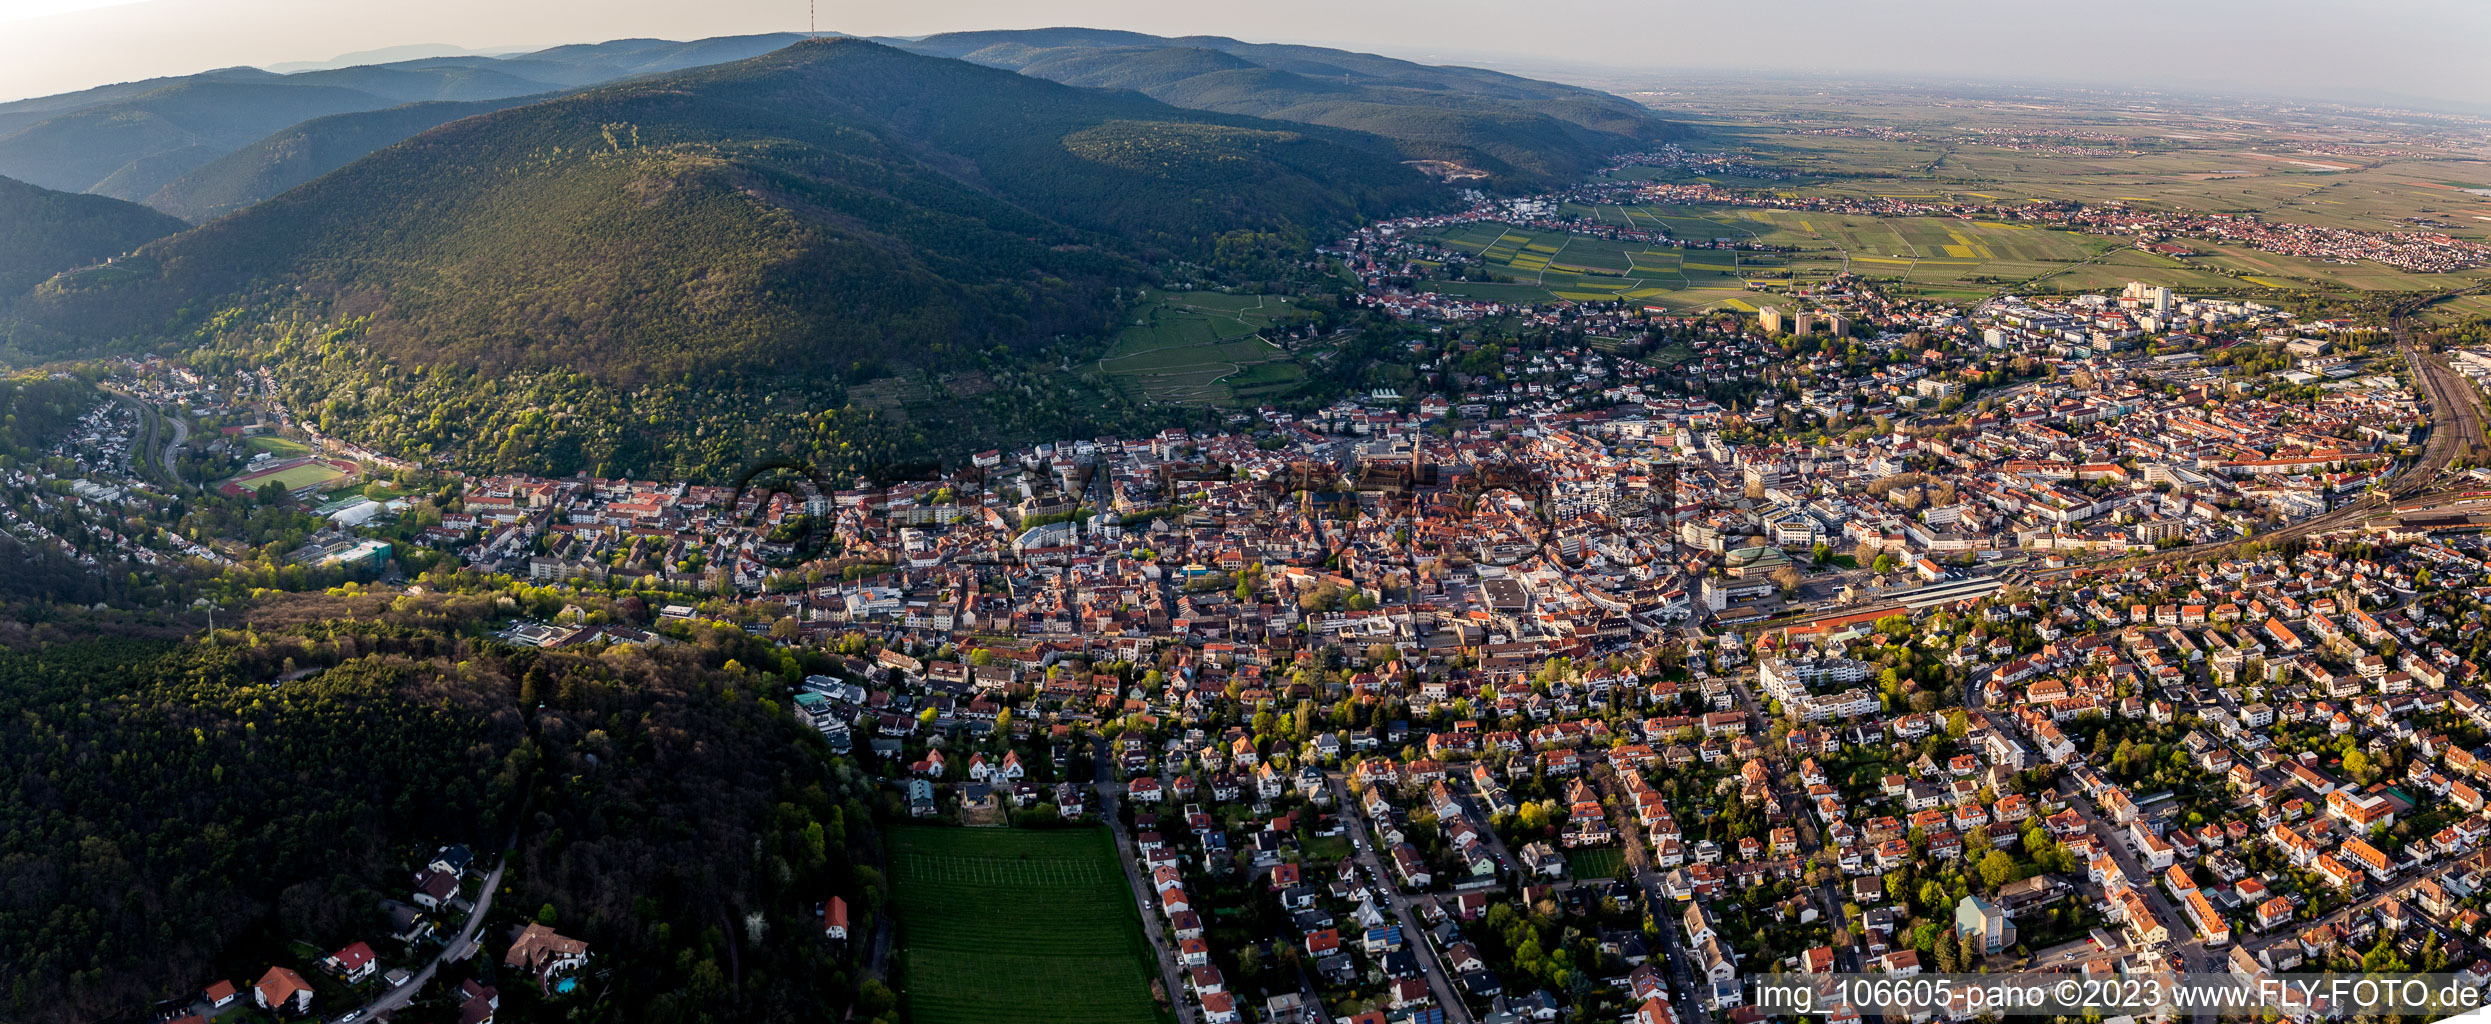 Neustadt an der Weinstraße im Bundesland Rheinland-Pfalz, Deutschland aus der Drohnenperspektive